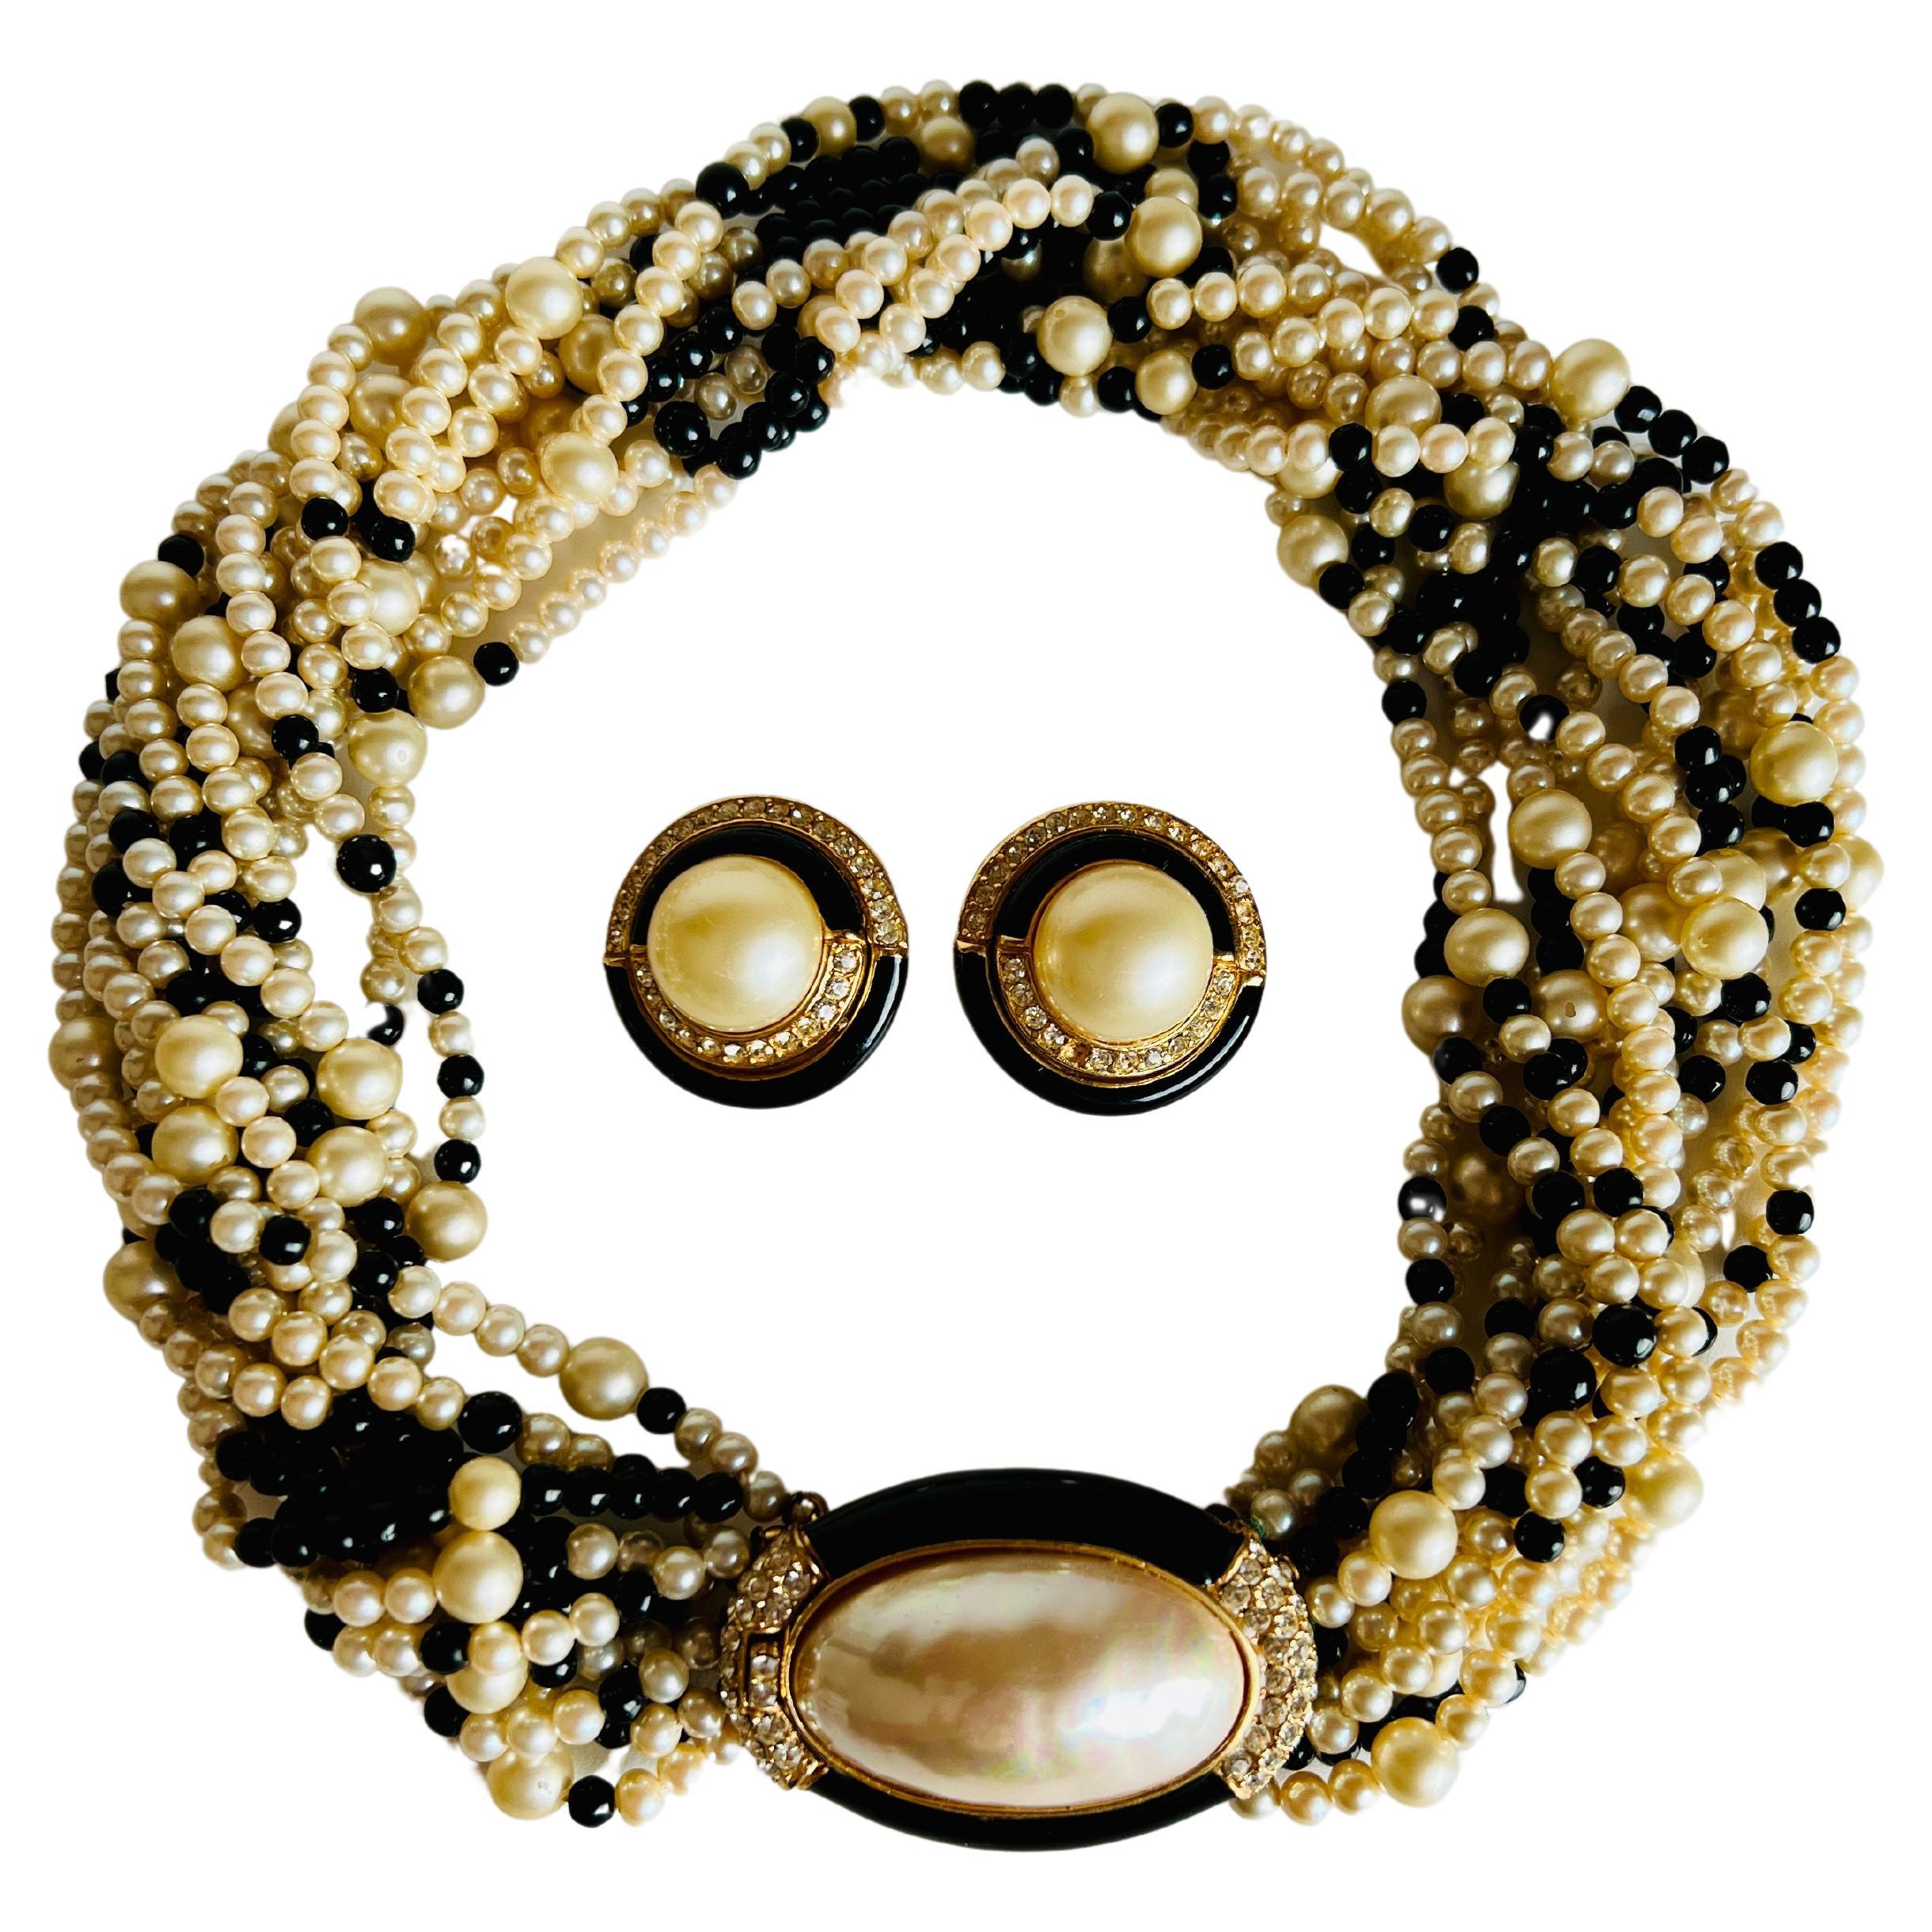 Dieses elegante Set besteht aus einer Torsade-Halskette aus schwarzem Glas und Perlenimitat mit einem goldfarbenen Verschluss, in dessen Mitte sich eine Perle im Mabe-Stil befindet, die mit Strasssteinen und schwarzer Emaille verziert ist, sowie